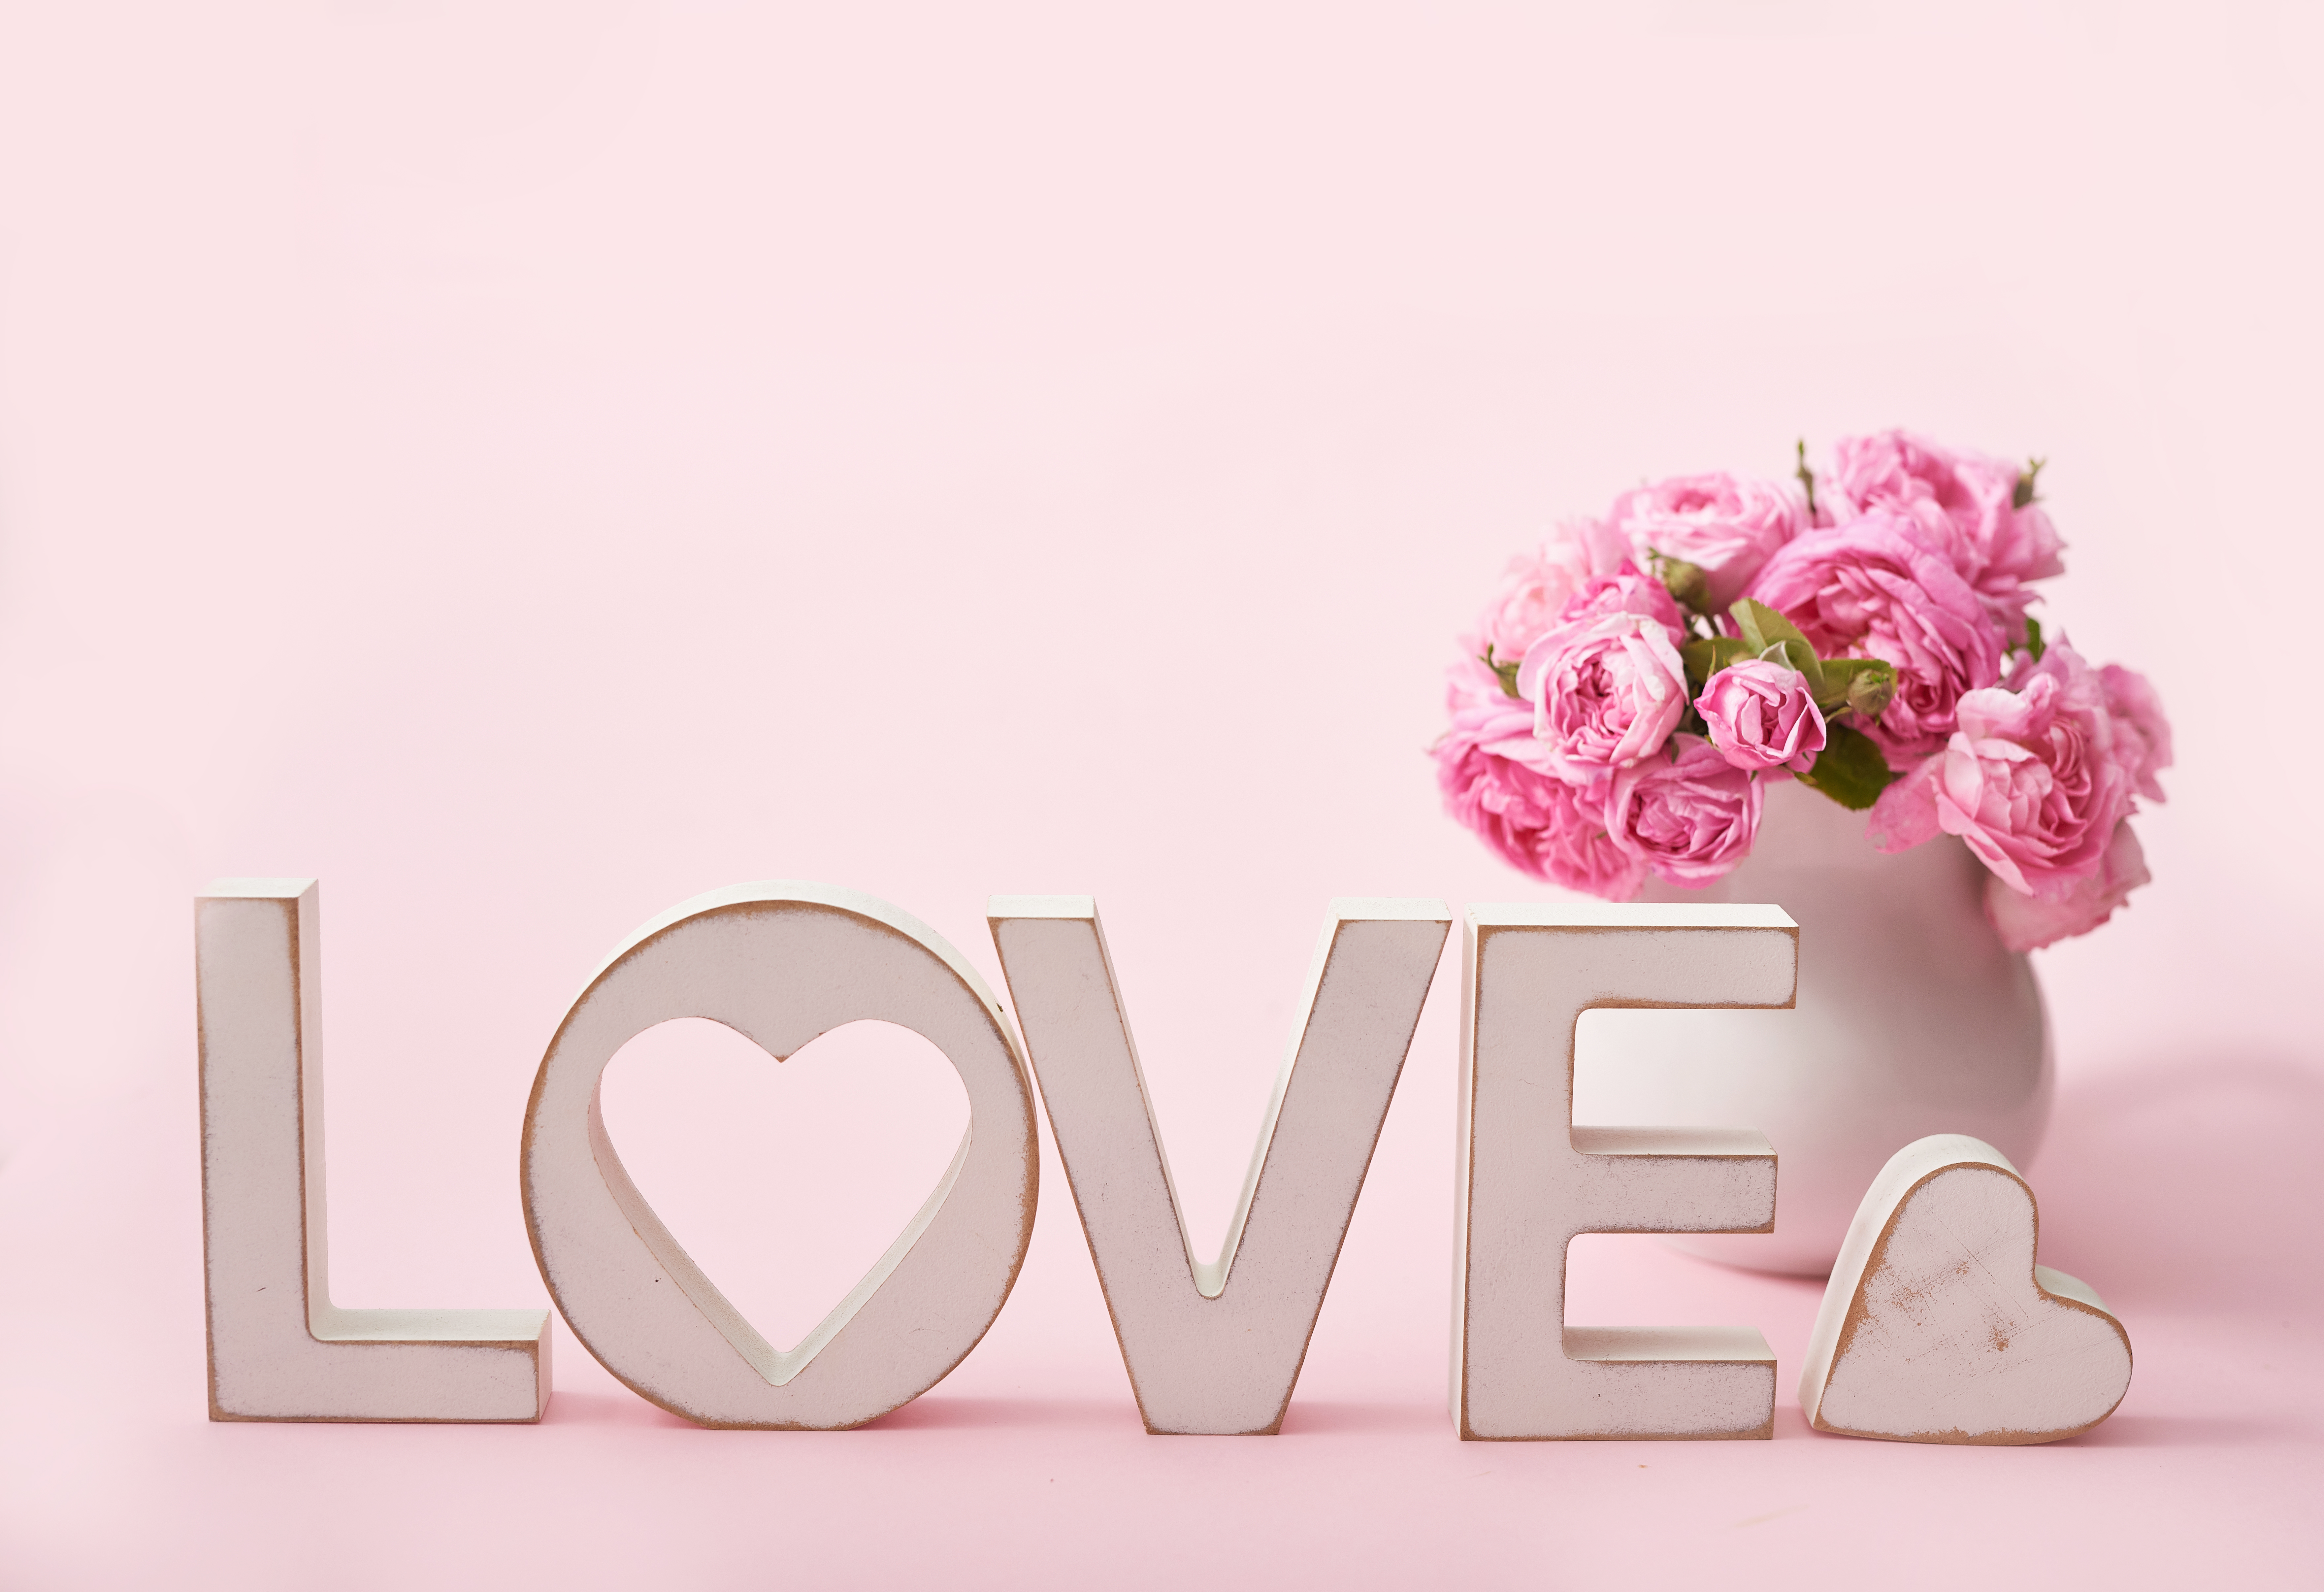 Лове голова. Красивые обои любовь. "Цветы любви". Love картинки надписи. Красивая надпись на розовом.